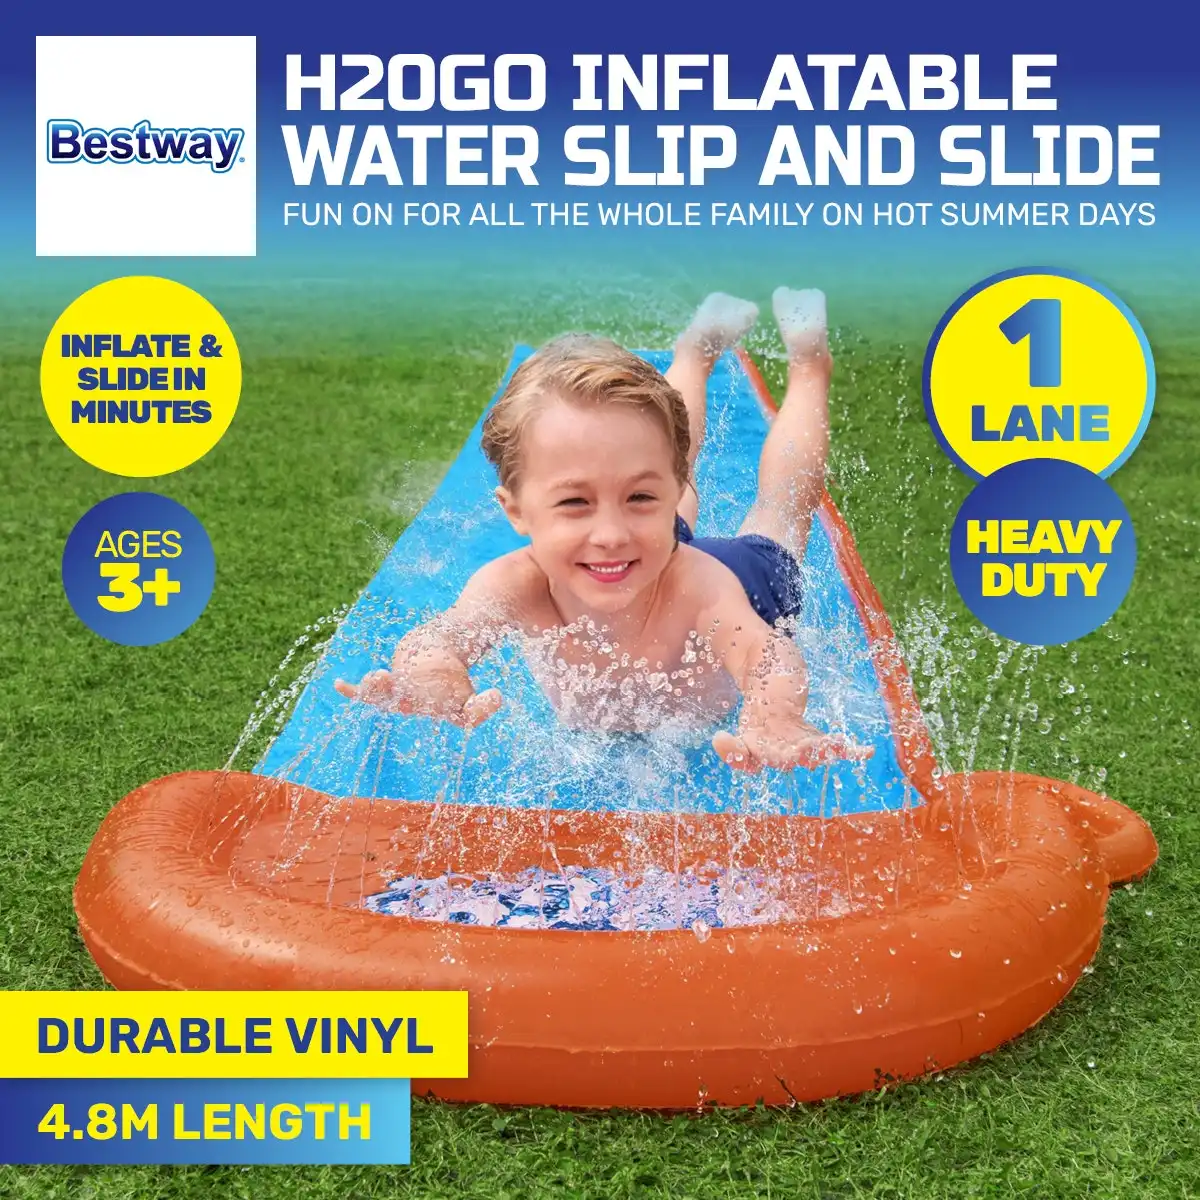 Bestway® 4.8m Single Lane Inflatable Water Slide Built-In Water Jets